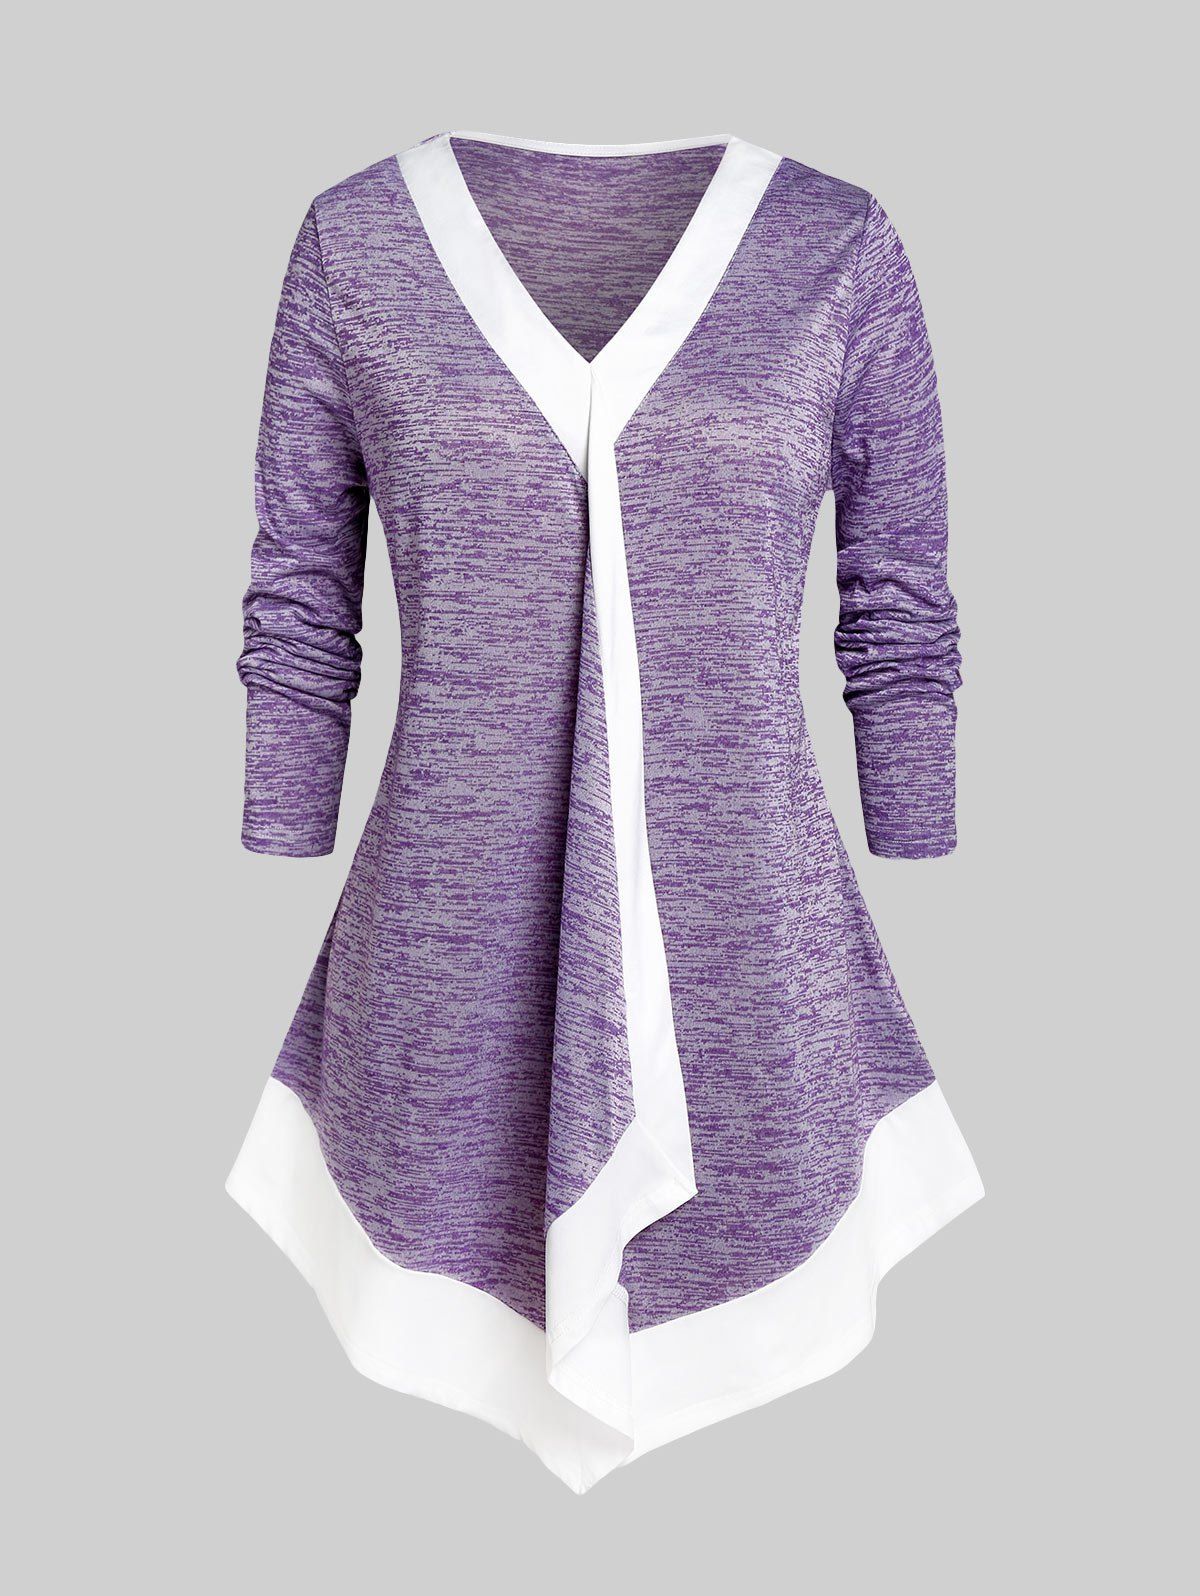 T-shirt Irrégulier Teinté de Grande Taille - Violet clair 5X